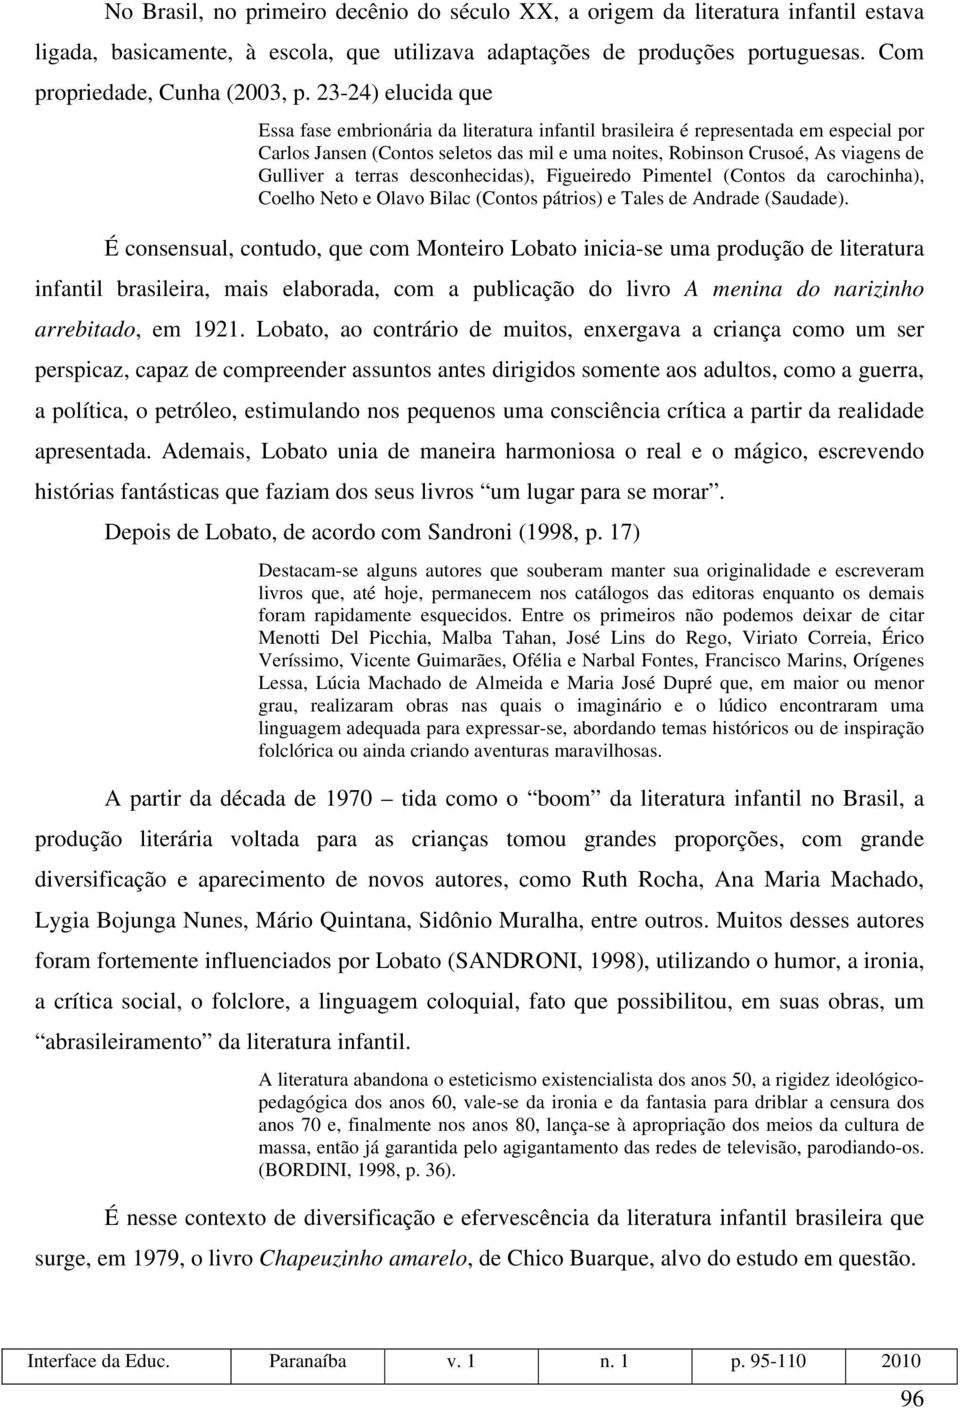 terras desconhecidas), Figueiredo Pimentel (Contos da carochinha), Coelho Neto e Olavo Bilac (Contos pátrios) e Tales de Andrade (Saudade).